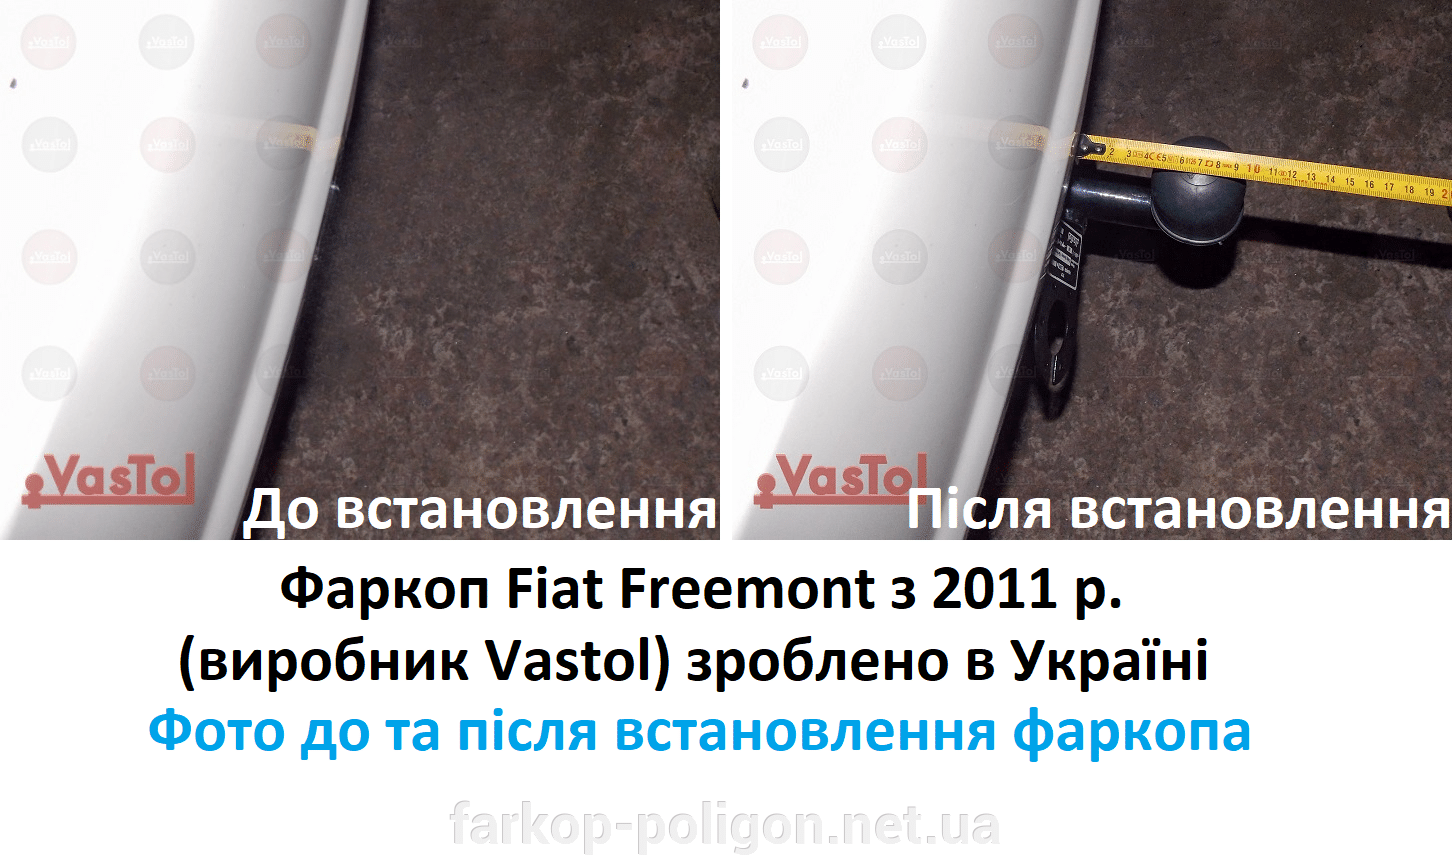 Фото до та після встановлення Фаркоп Fiat Freemont с 2011 г. (производитель Vastol) сделано в Украине FI-9 (16)